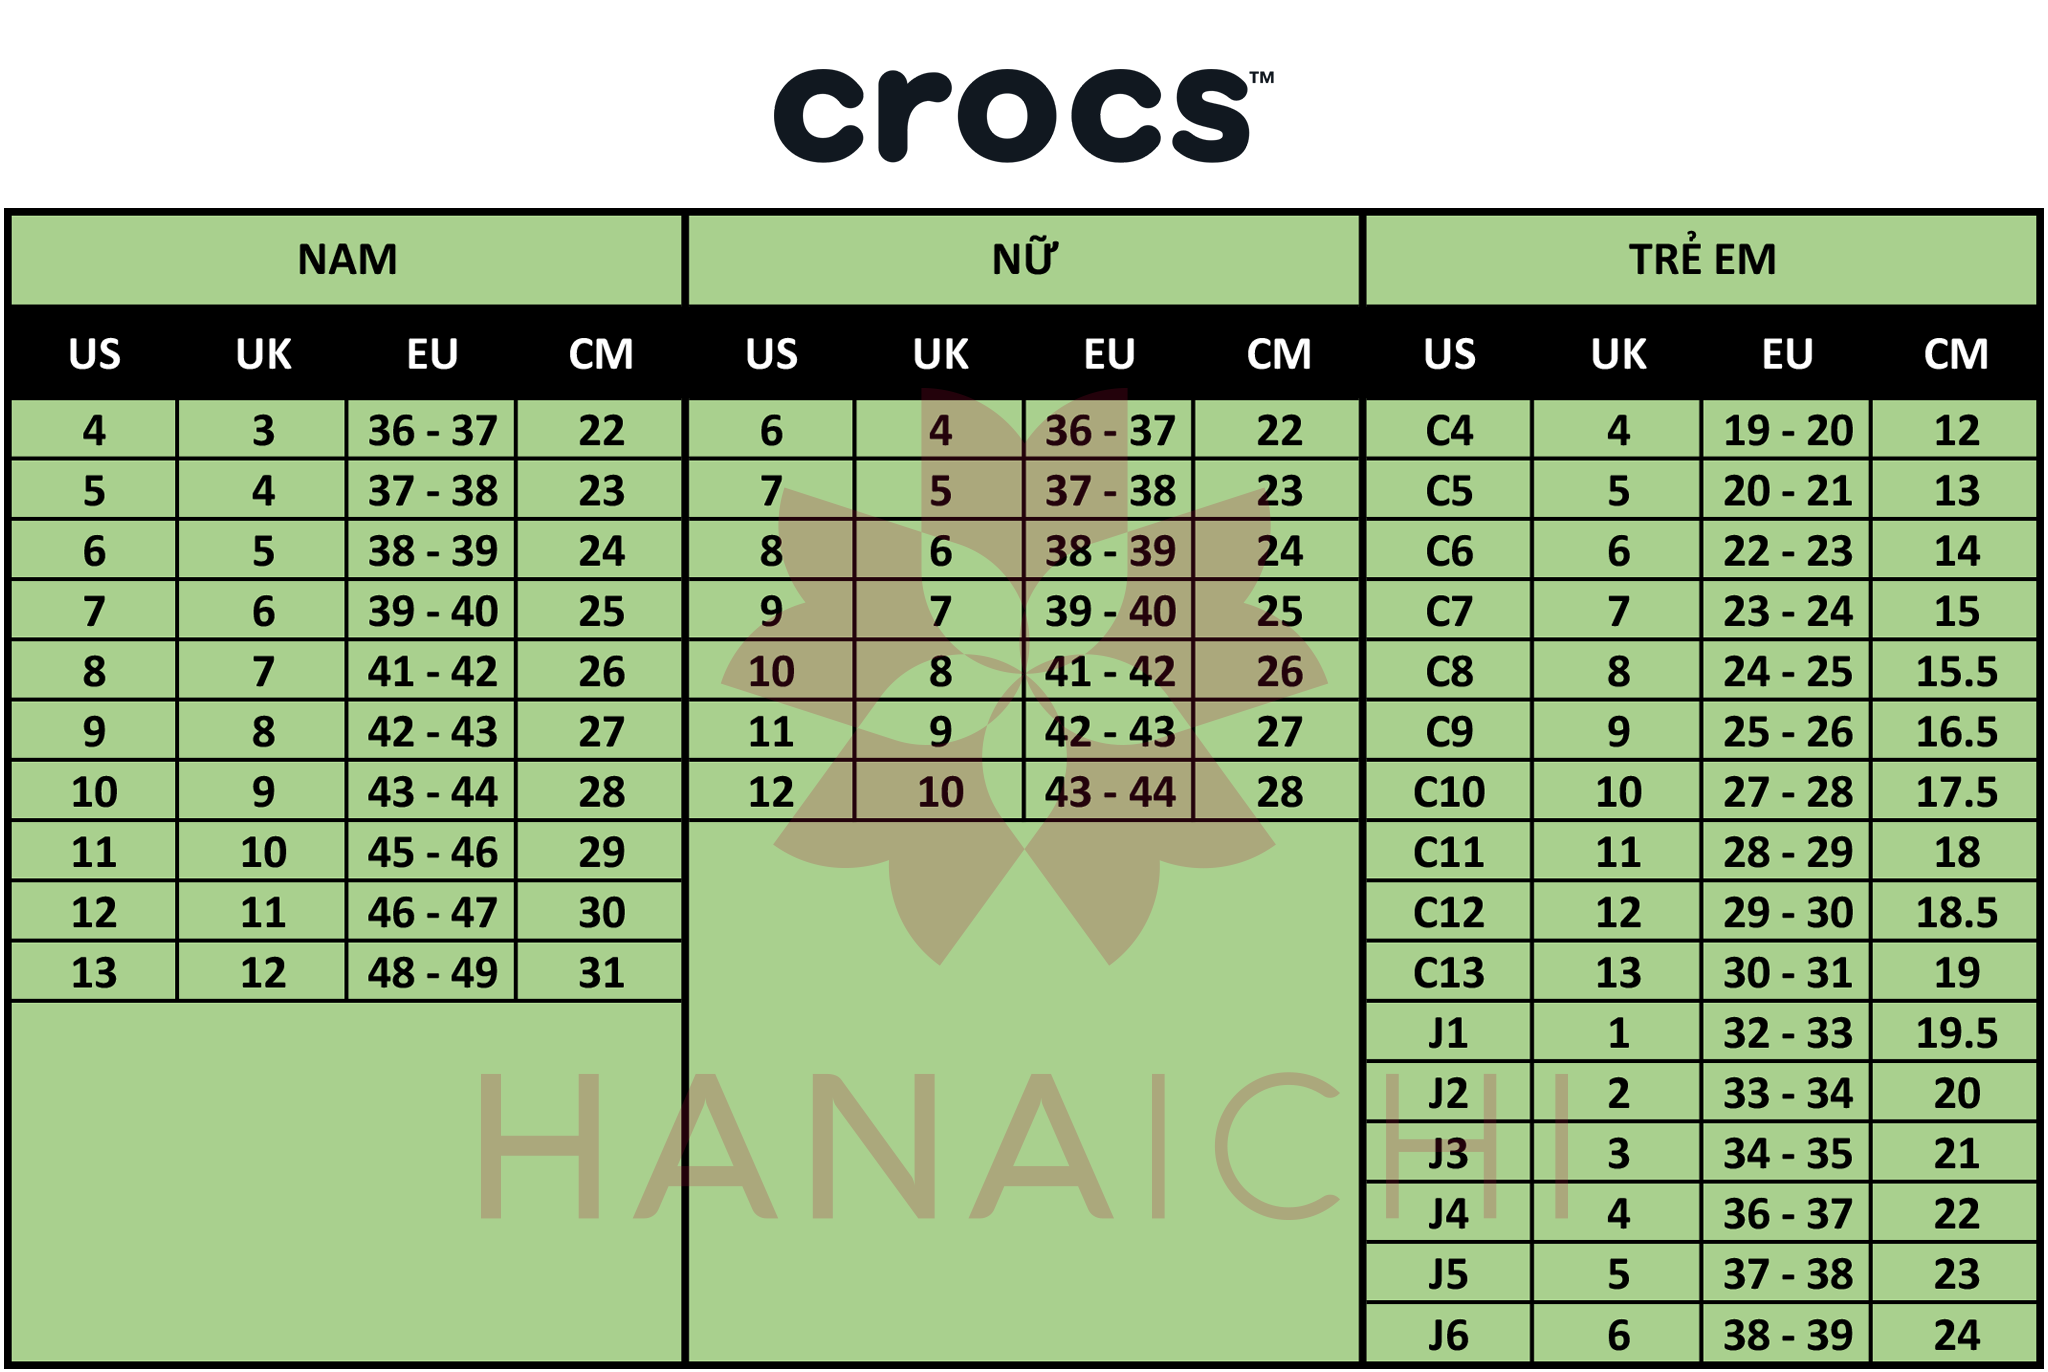 crocs c6 in cm